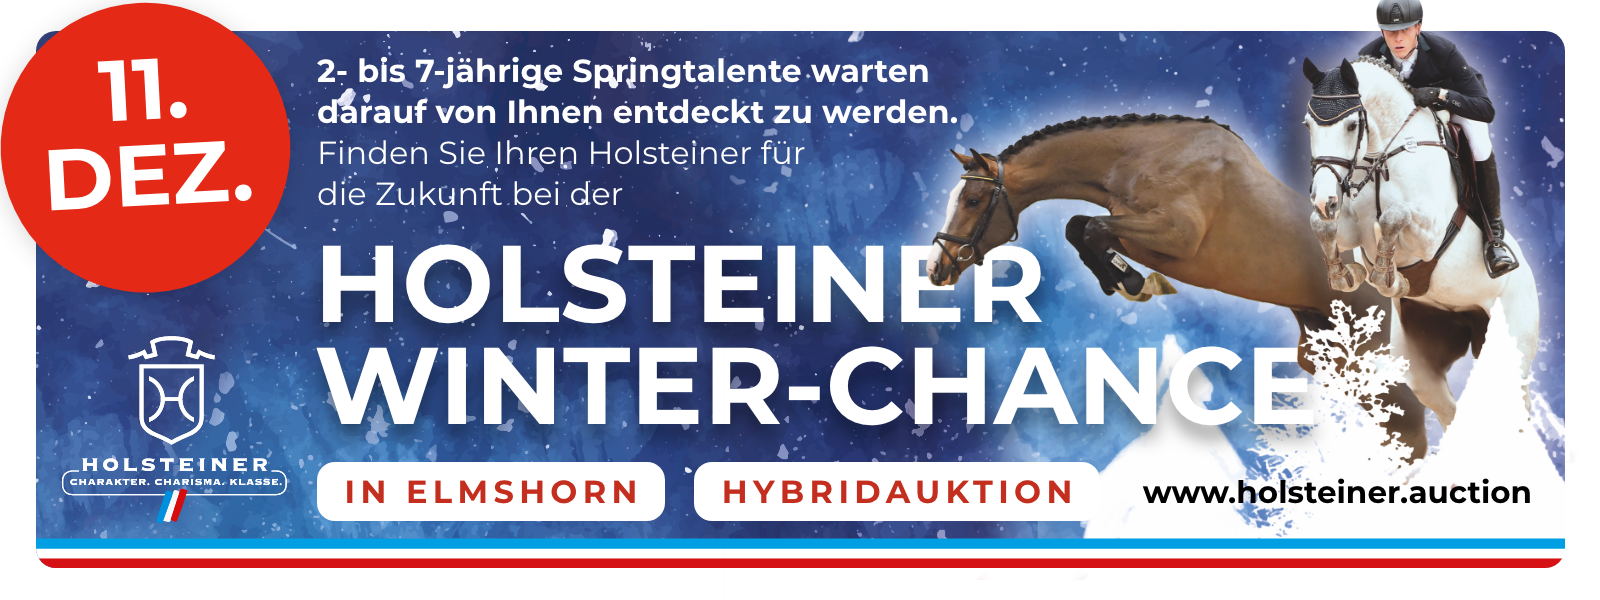 Holsteiner Winter-Chance